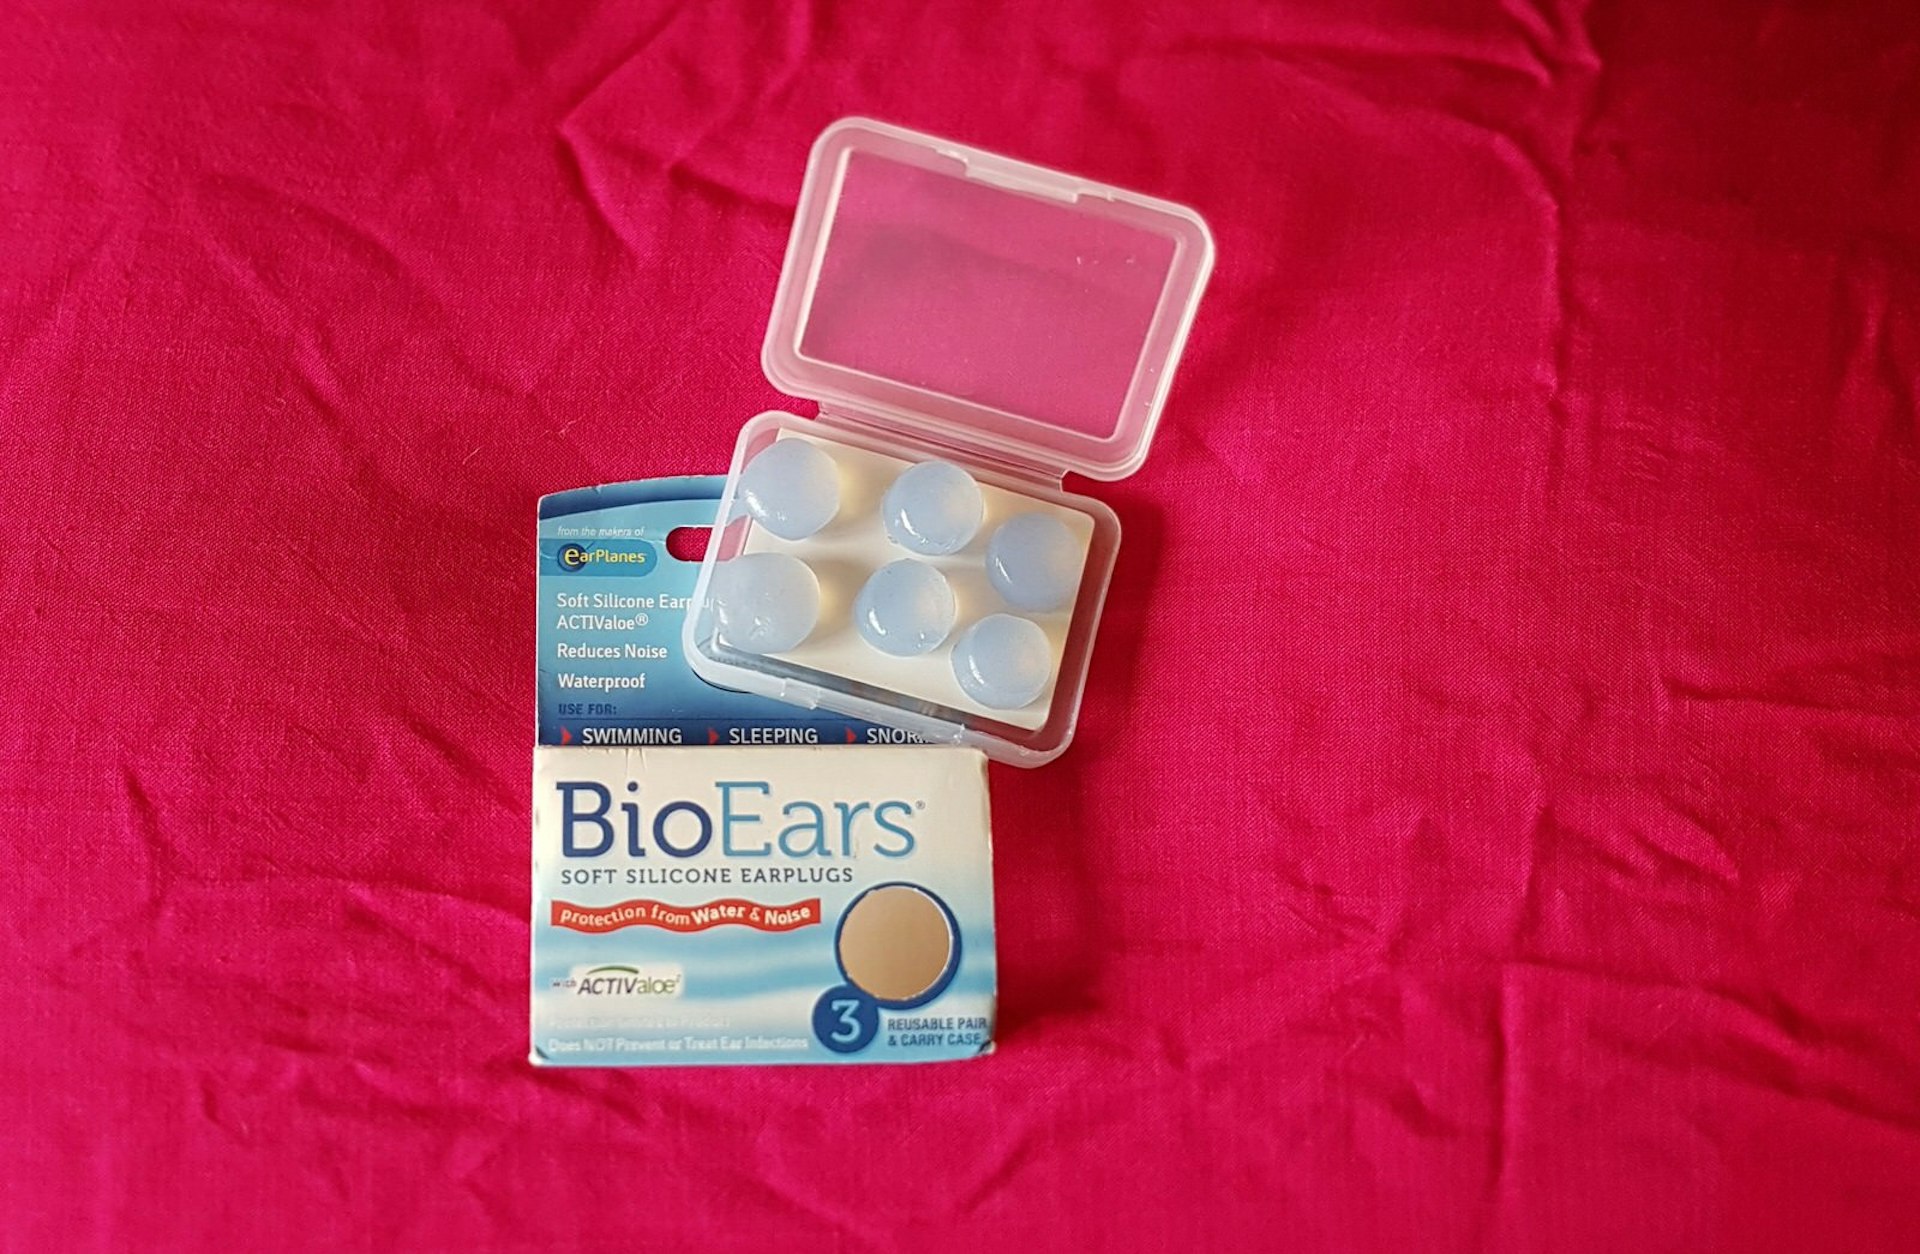 BioEars silicone earplugs